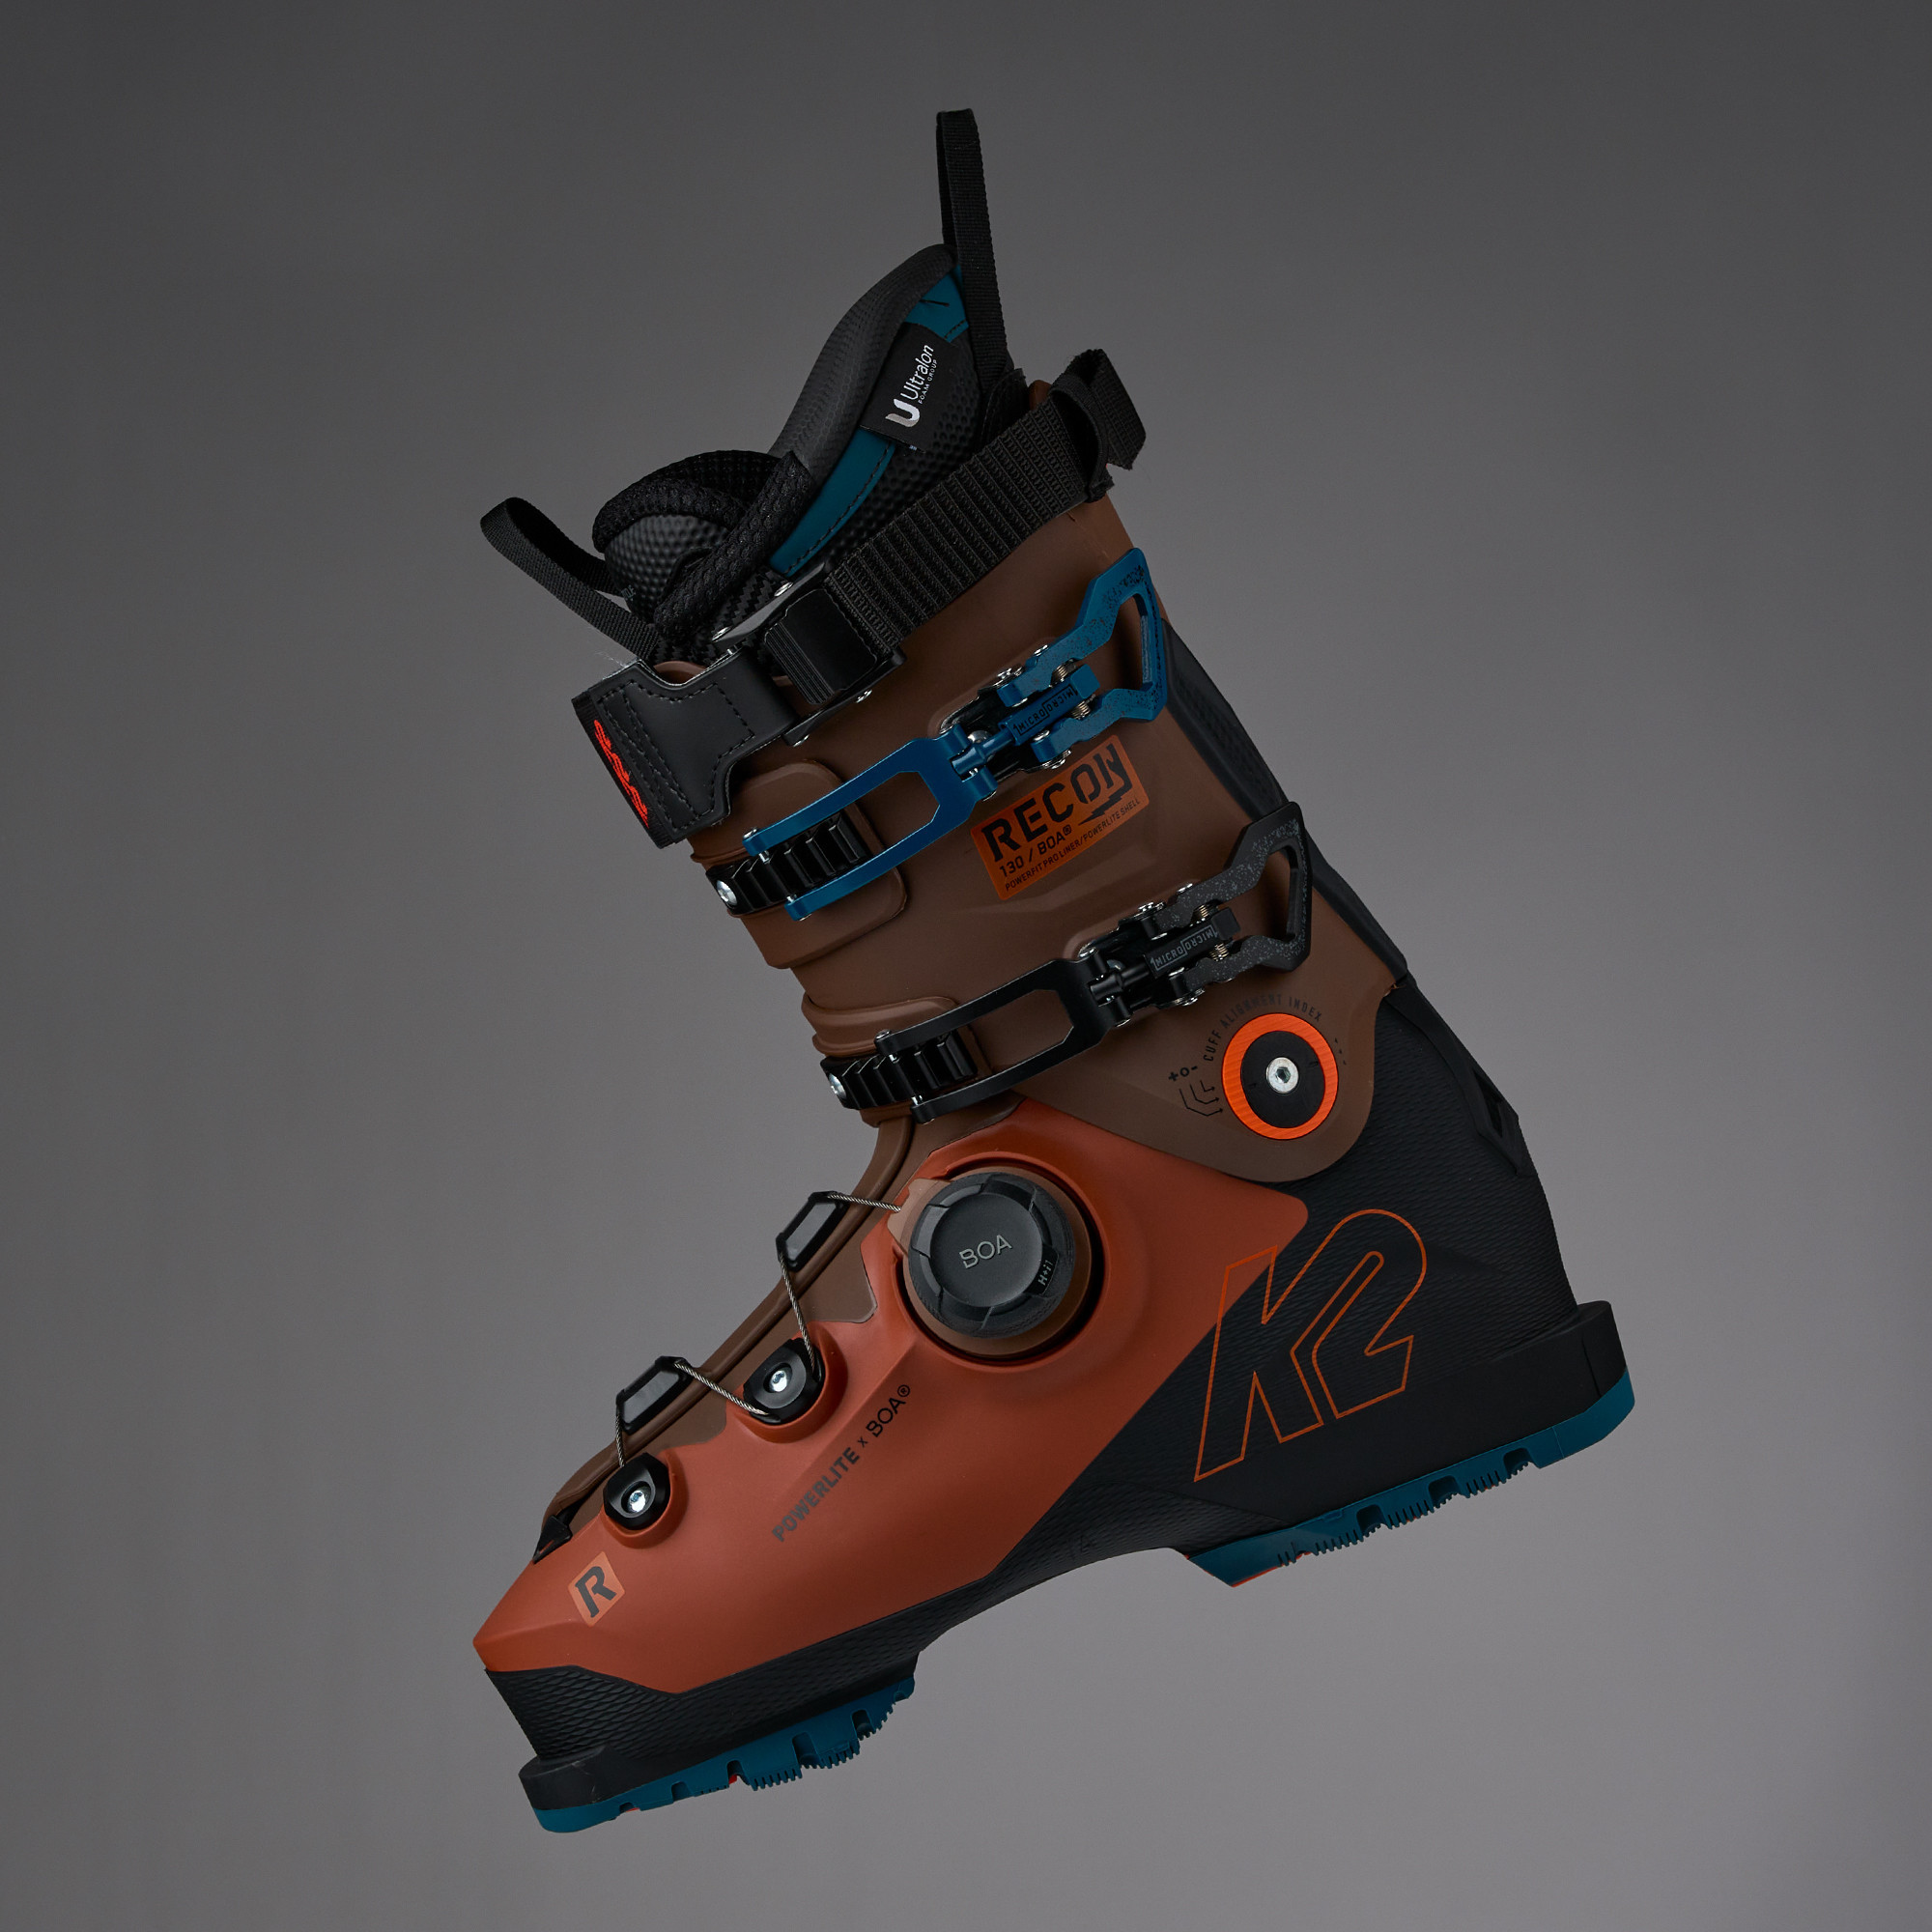 2024 K2 Mindbender 130 Boa Ski Boot, Alpine / Ski Boots